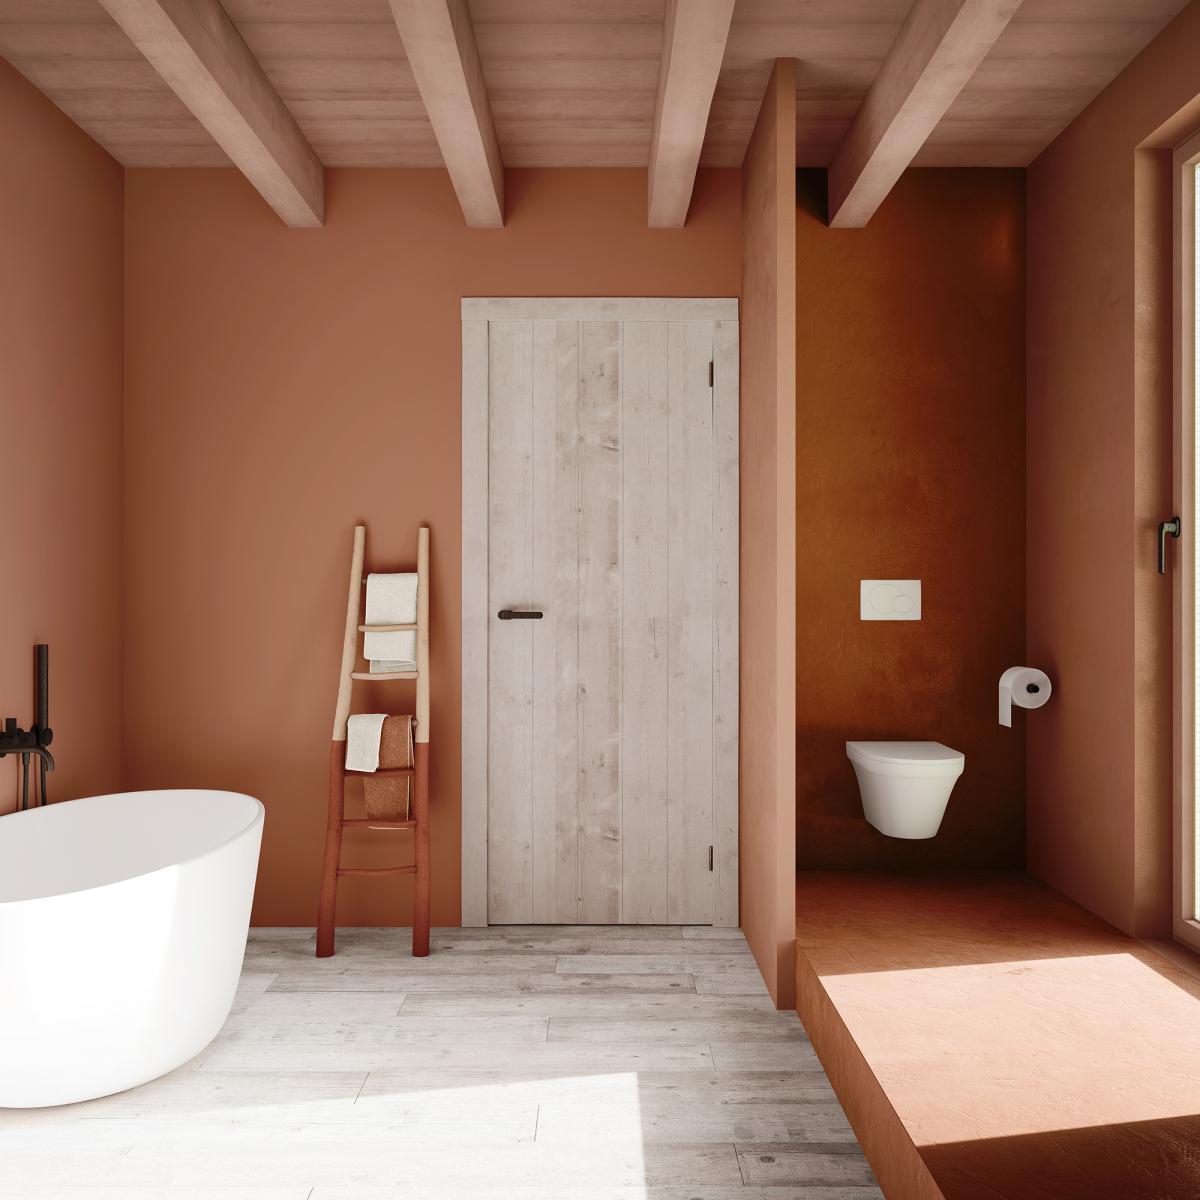 Creëer een intieme badkamer met warme verfkleuren